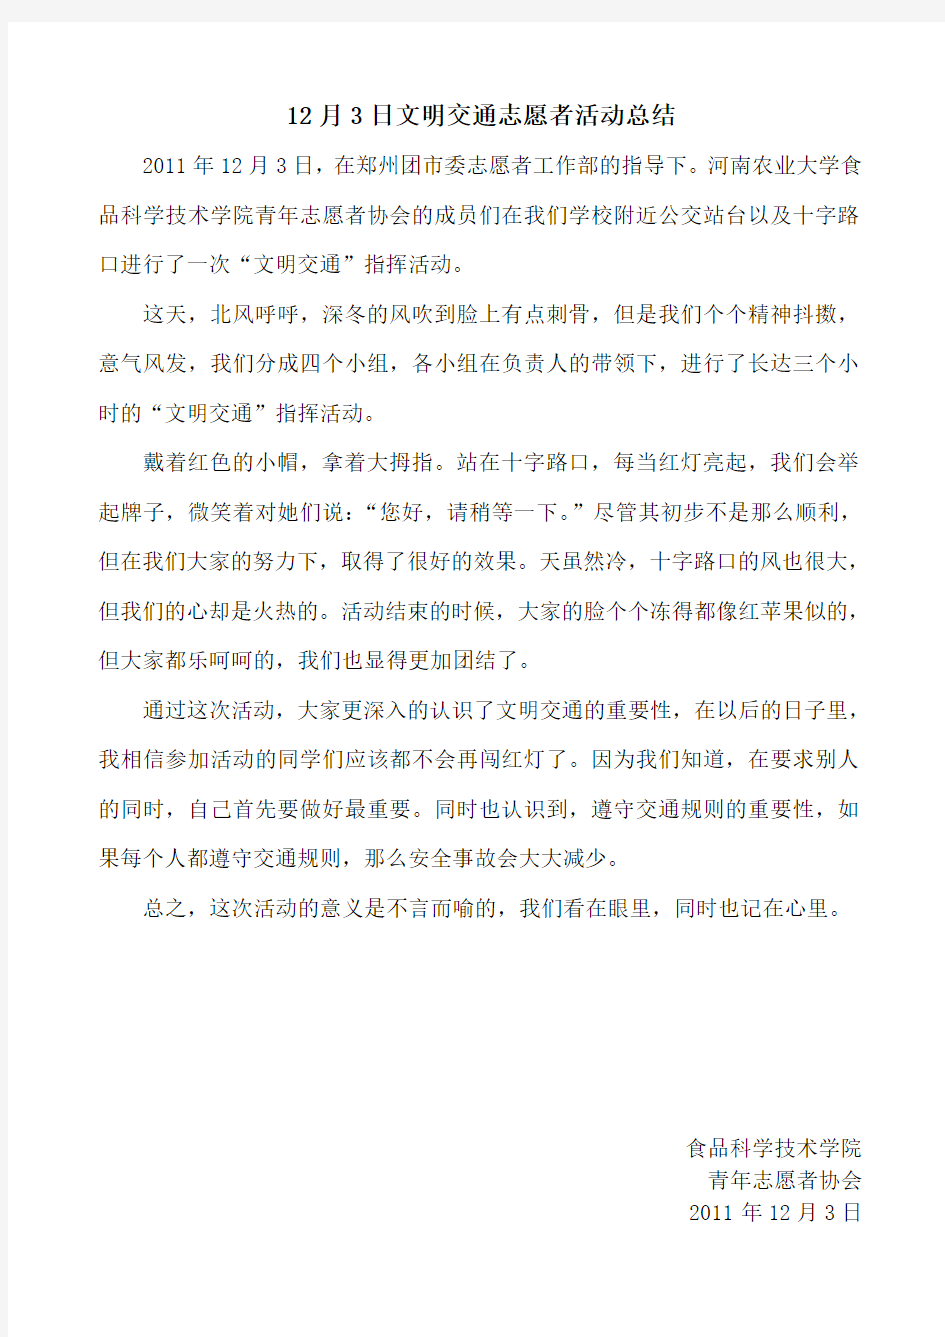 河南农业大学阳光志愿者协会--2011.12.03,文明交通志愿者活动总结